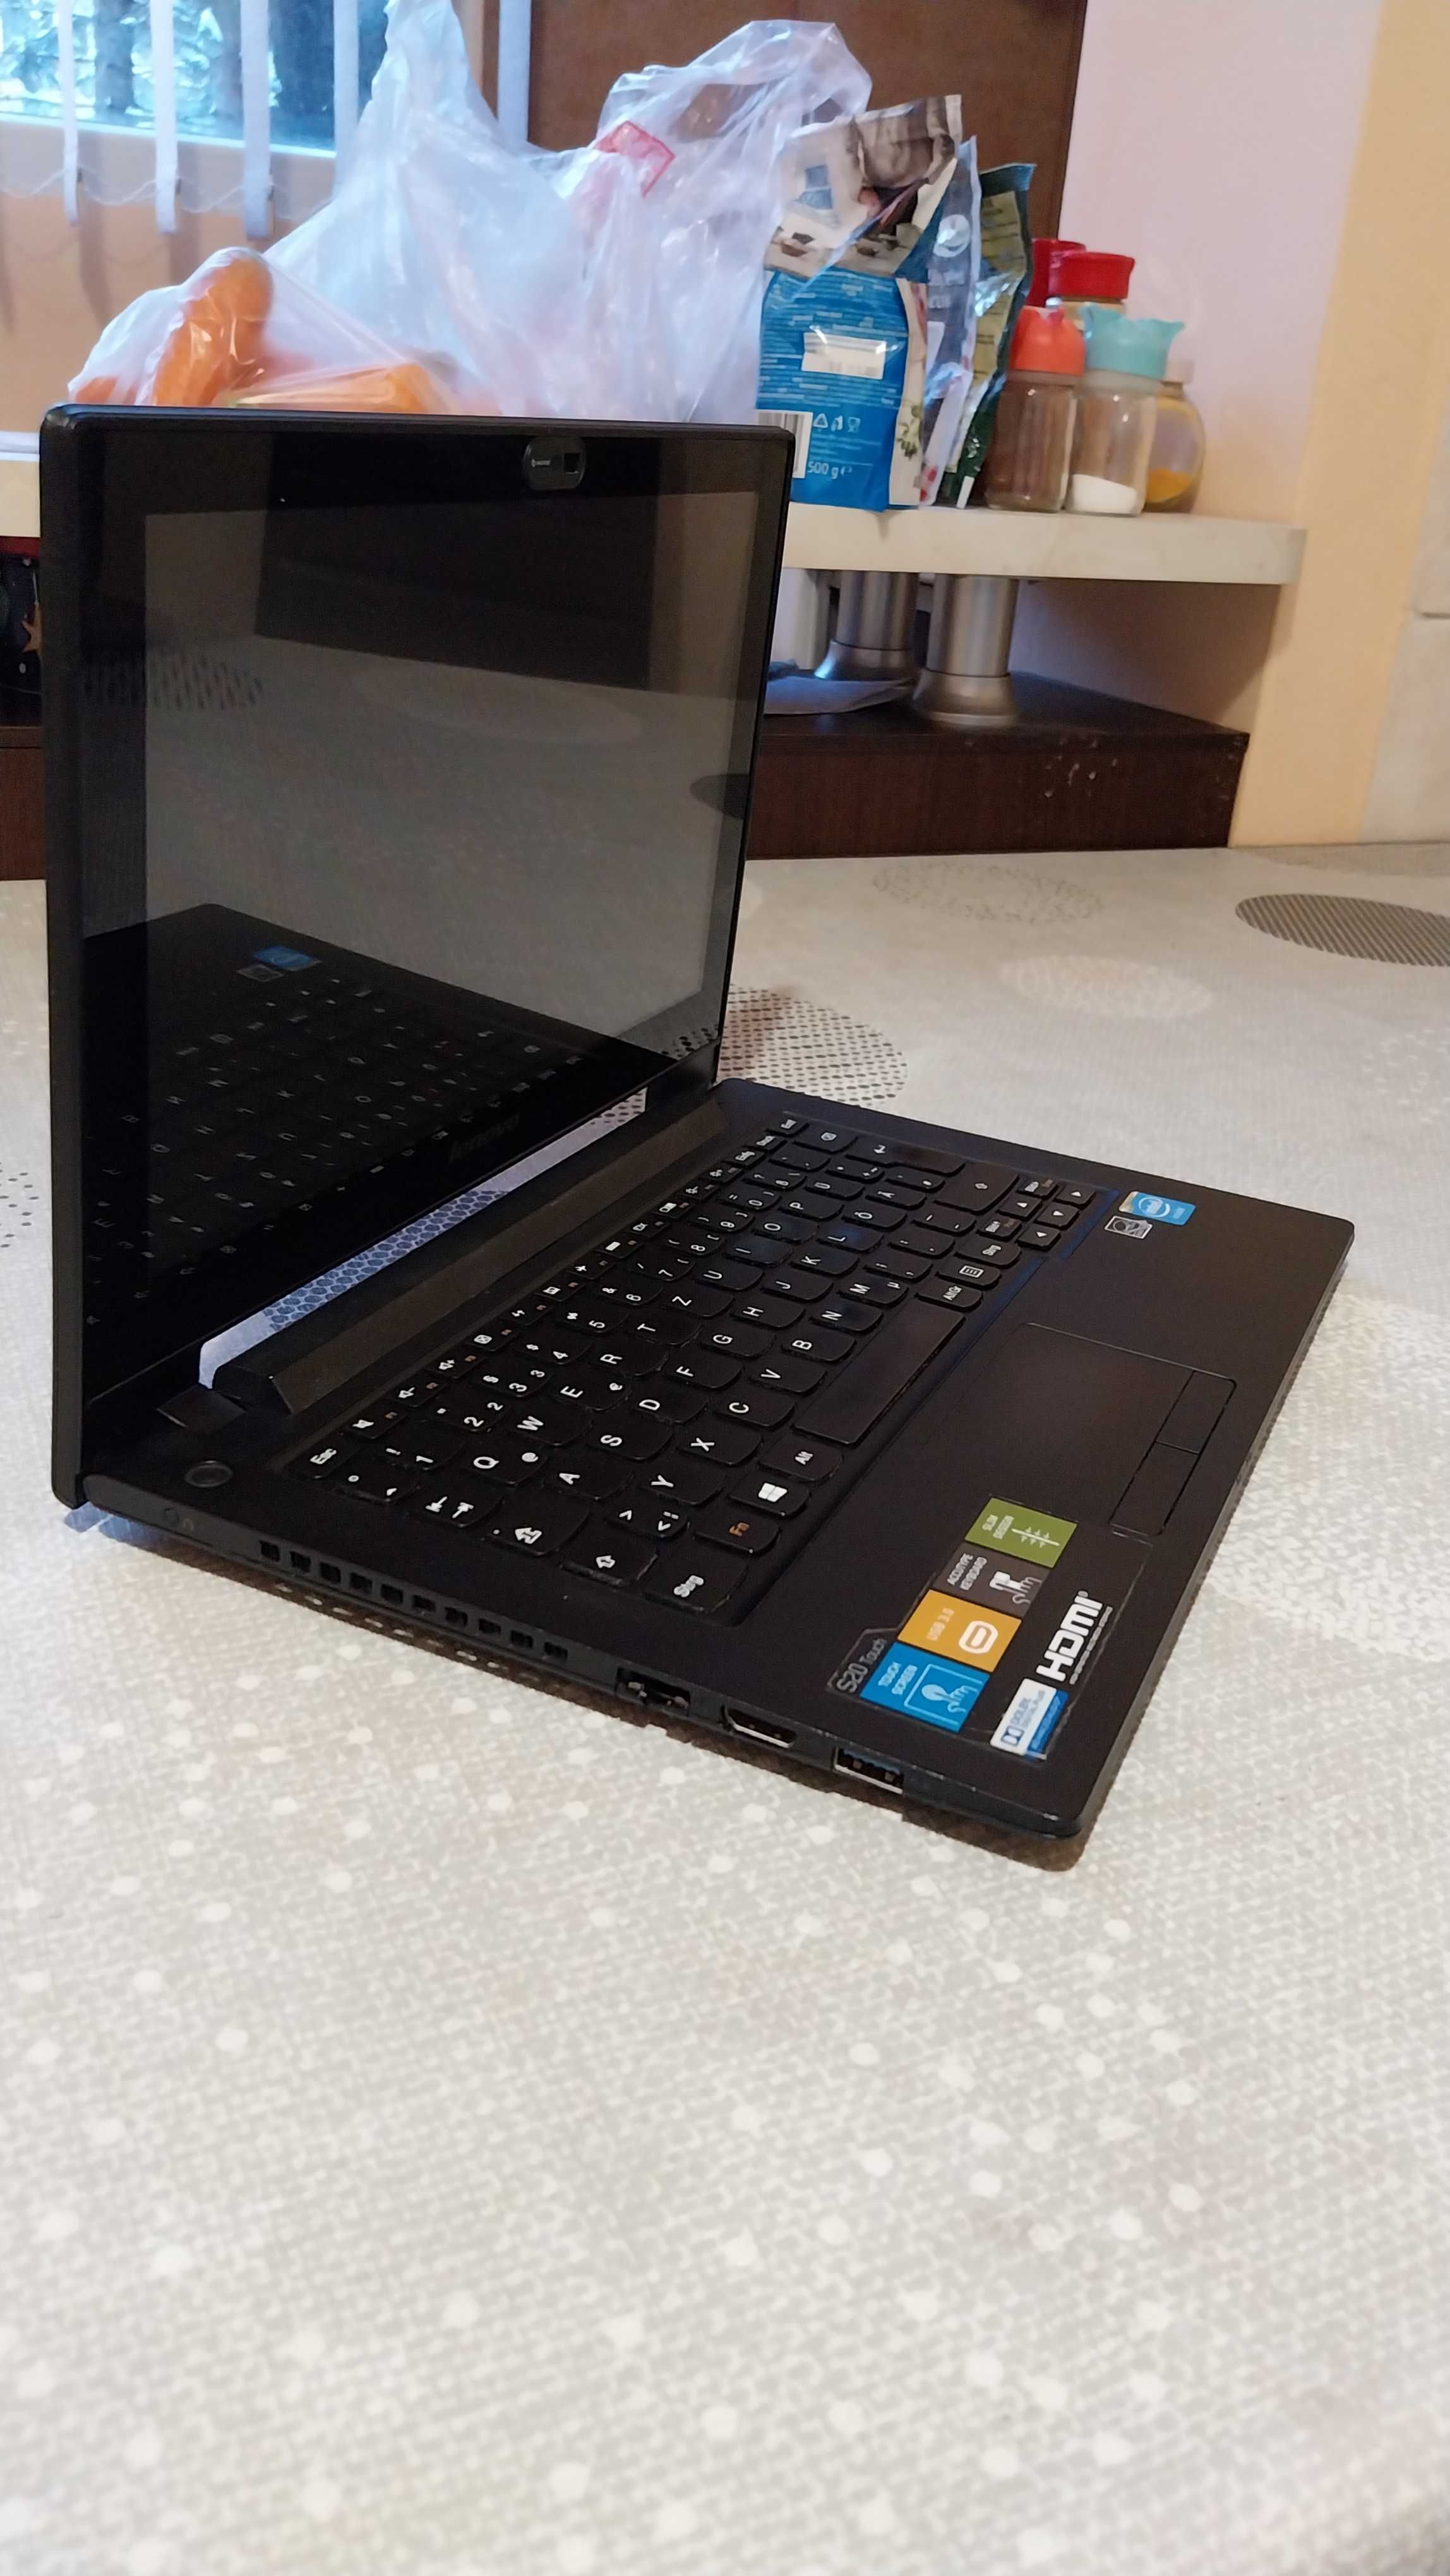 Уникален лаптоп Lenovo S20-30 Touch, с тъчскрийн на страхотна цена